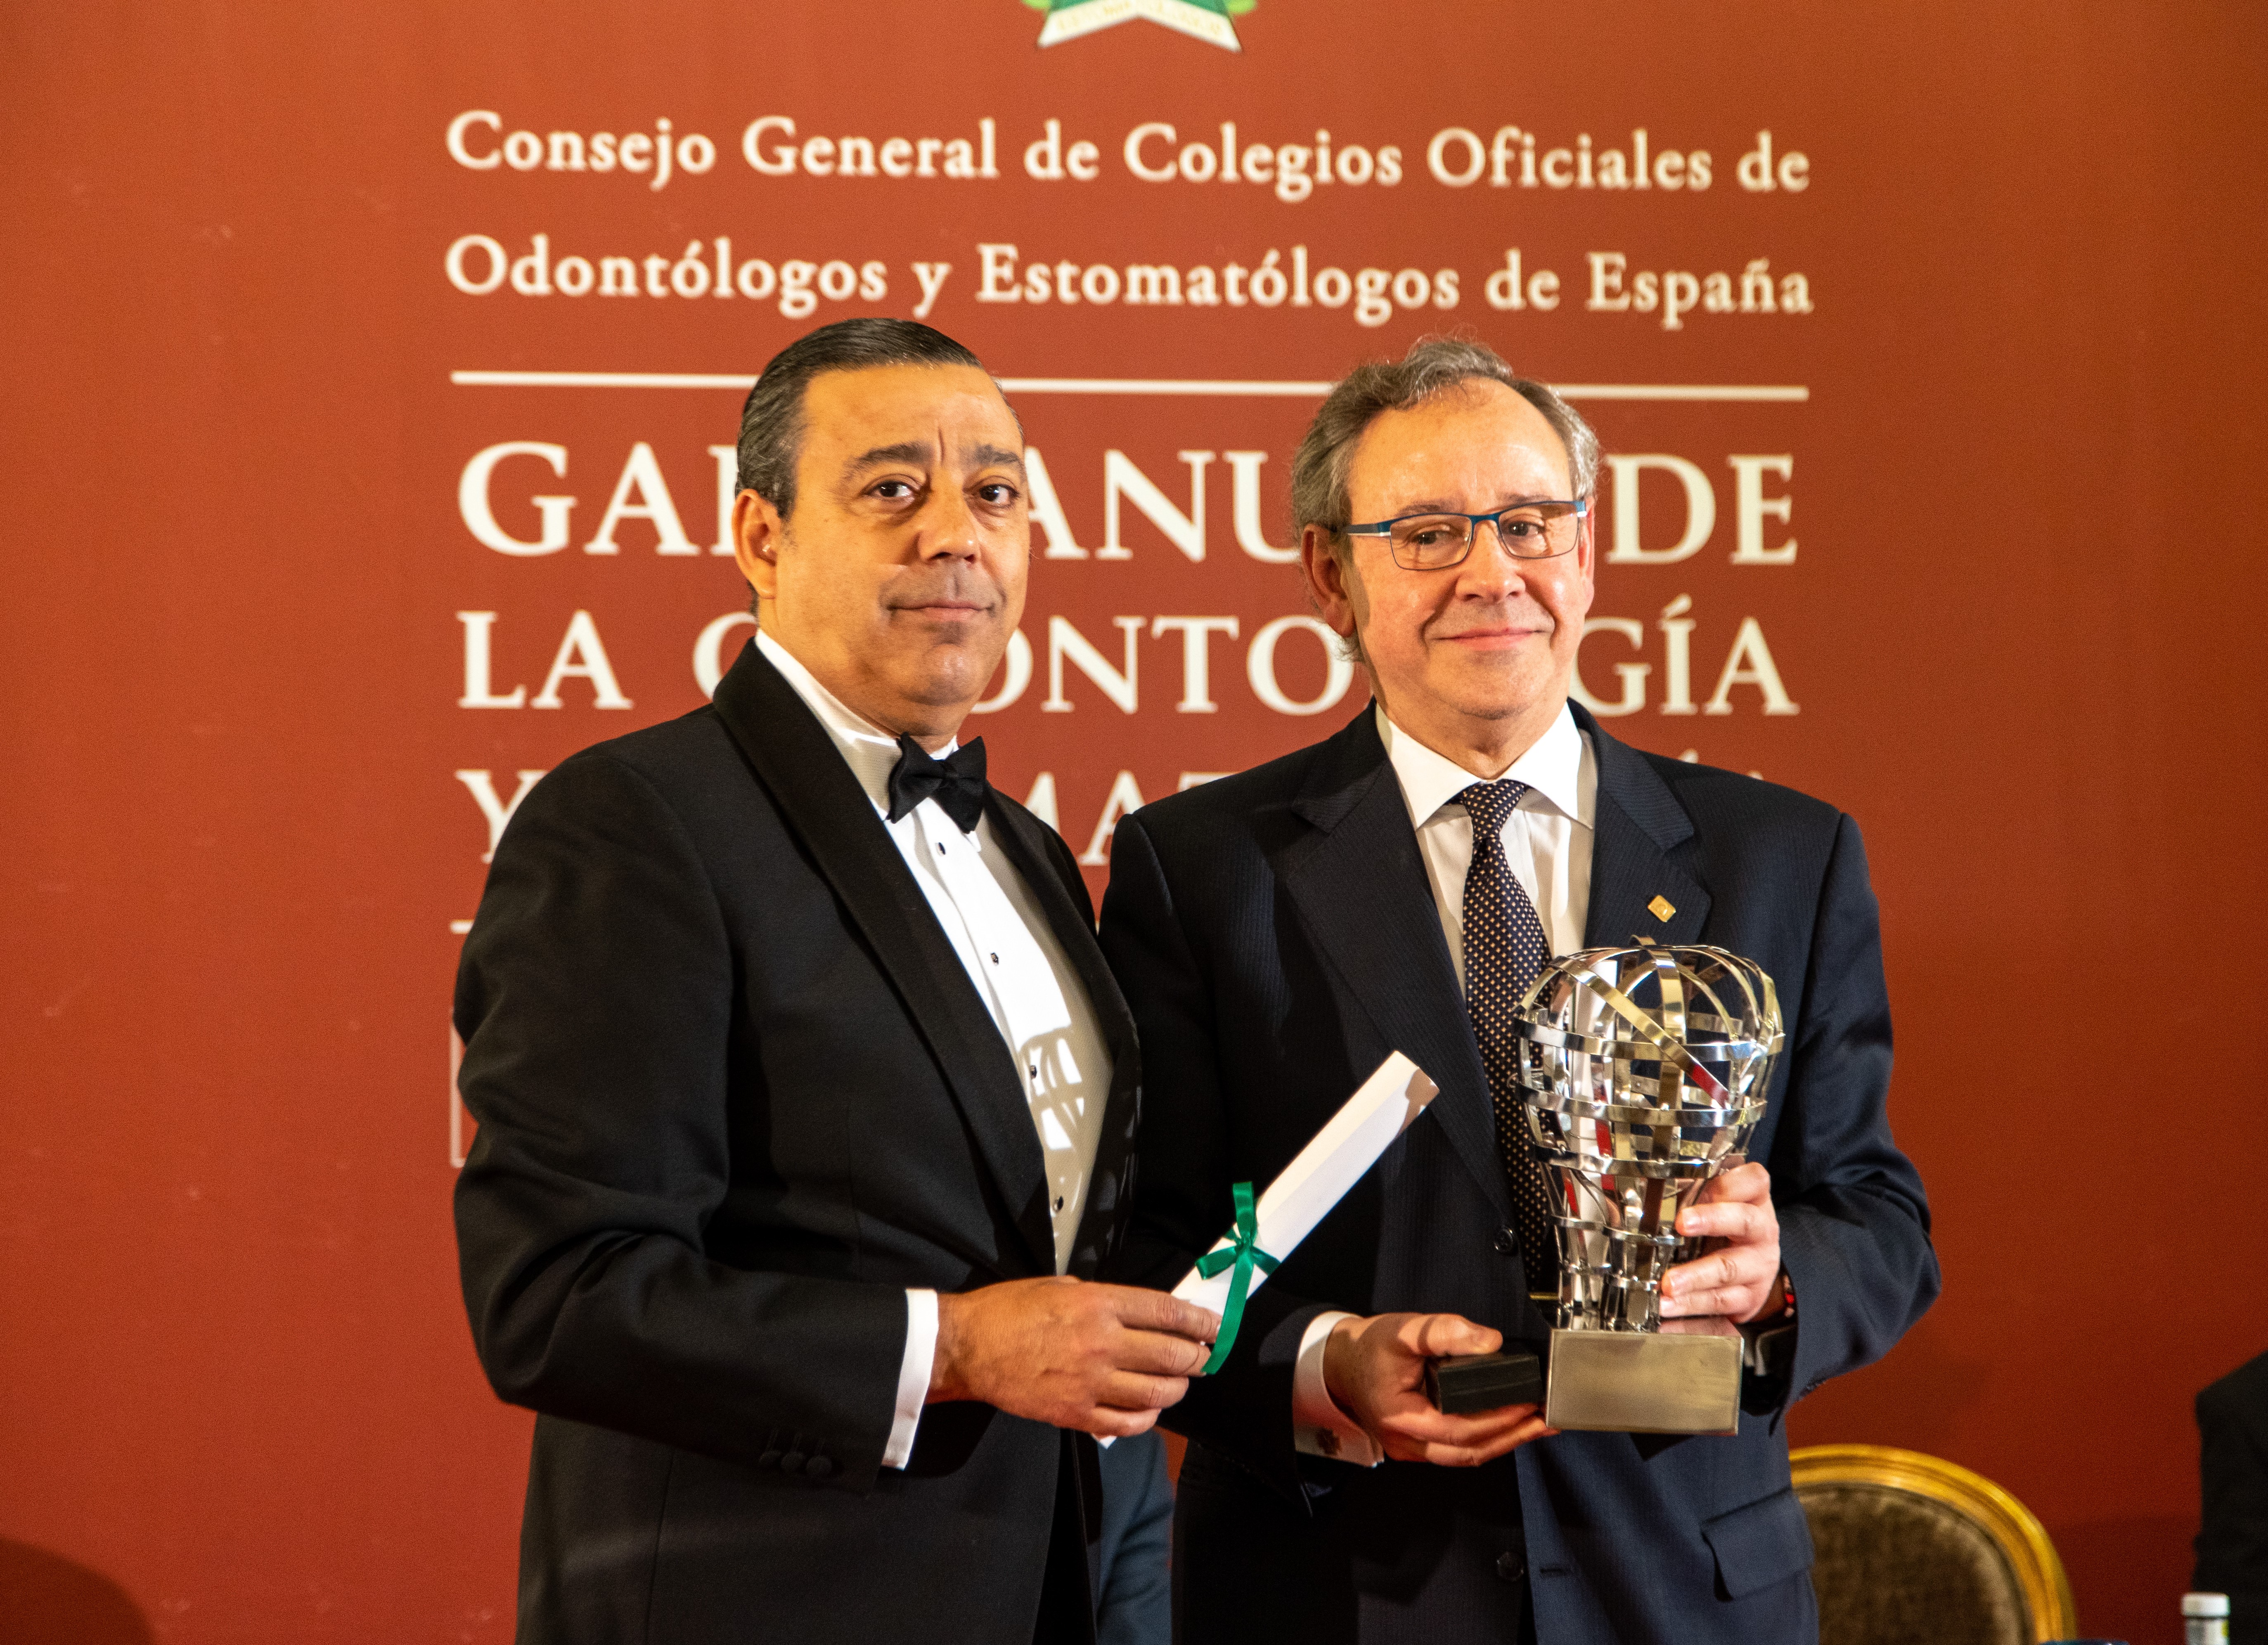 El Dr. Mariano Sanz Alonso recibe el premio "Dentista del Año" de manos del presidente del Consejo General de Dentistas de España, el Dr. Óscar Castro Reino. FOTO: Consejo General de Dentistas